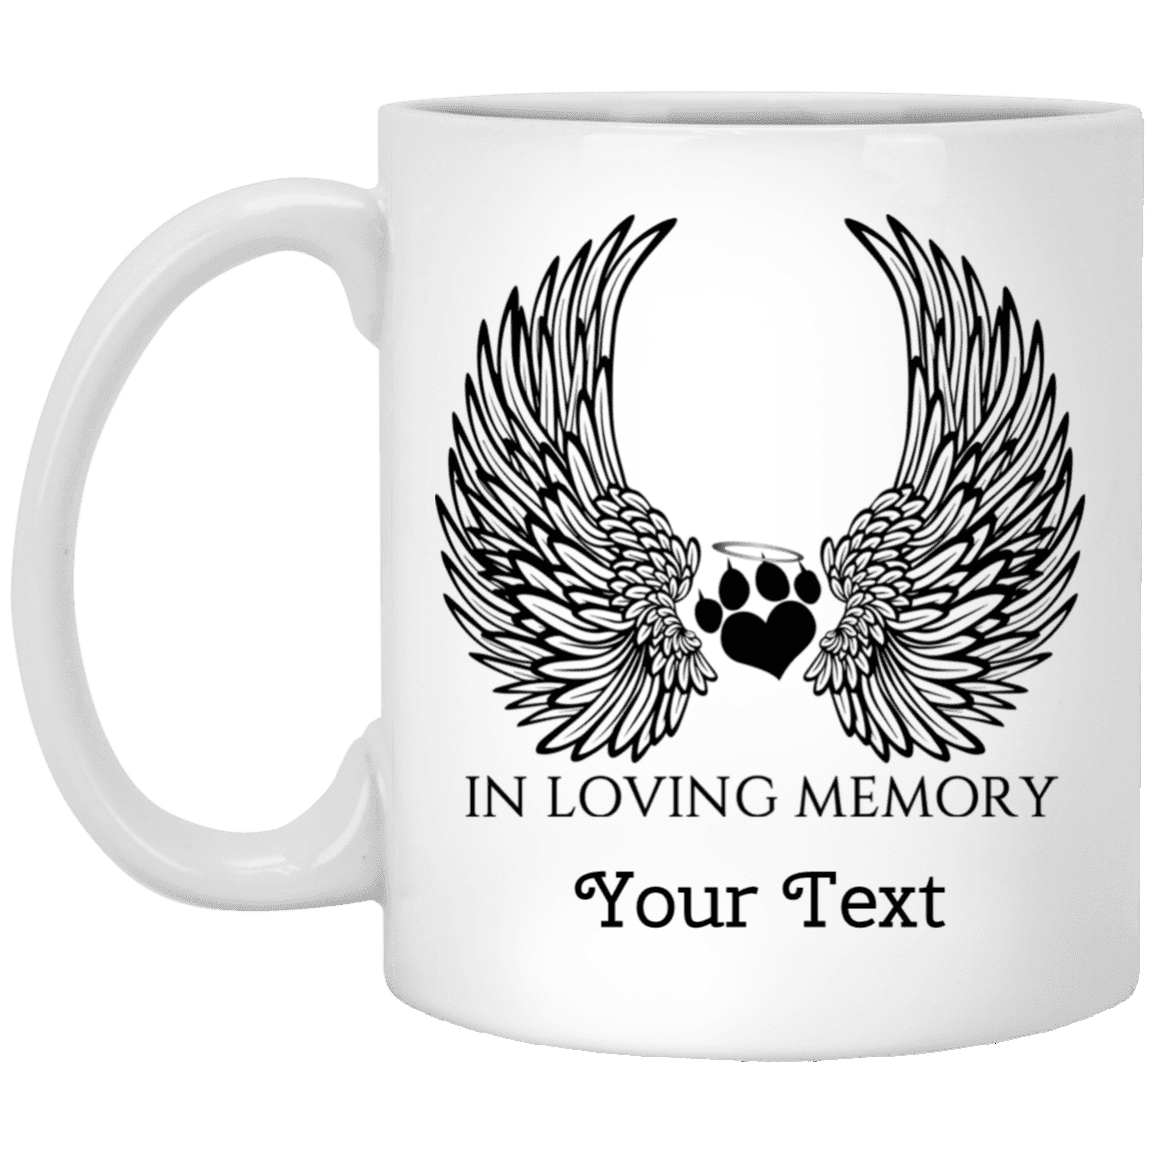 In Loving Memory Cat - Personalized Mugs.